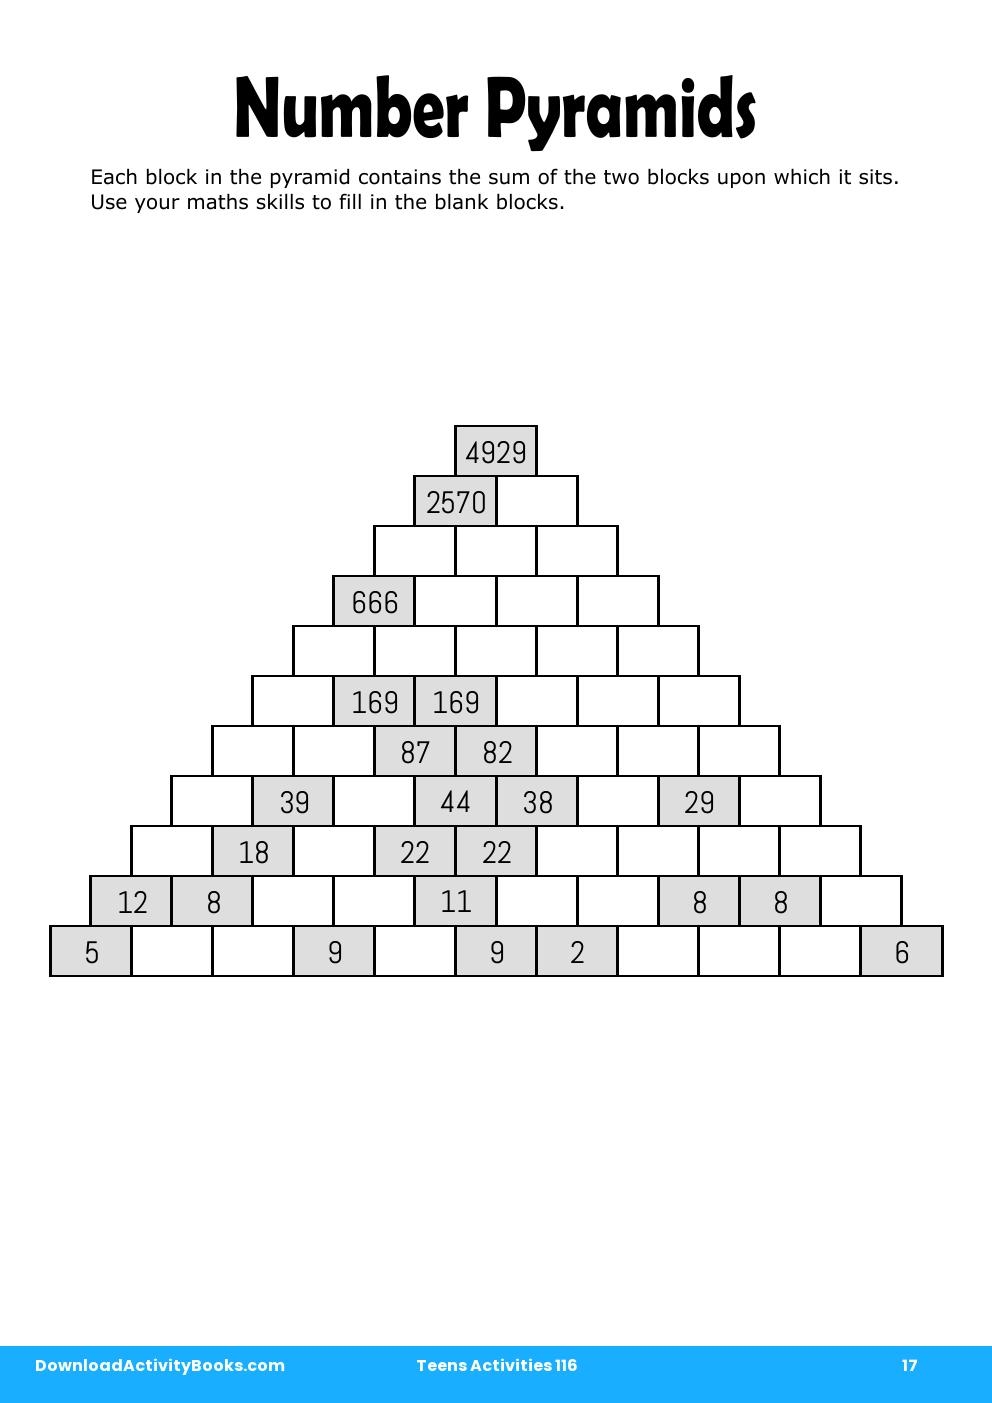 Number Pyramids in Teens Activities 116